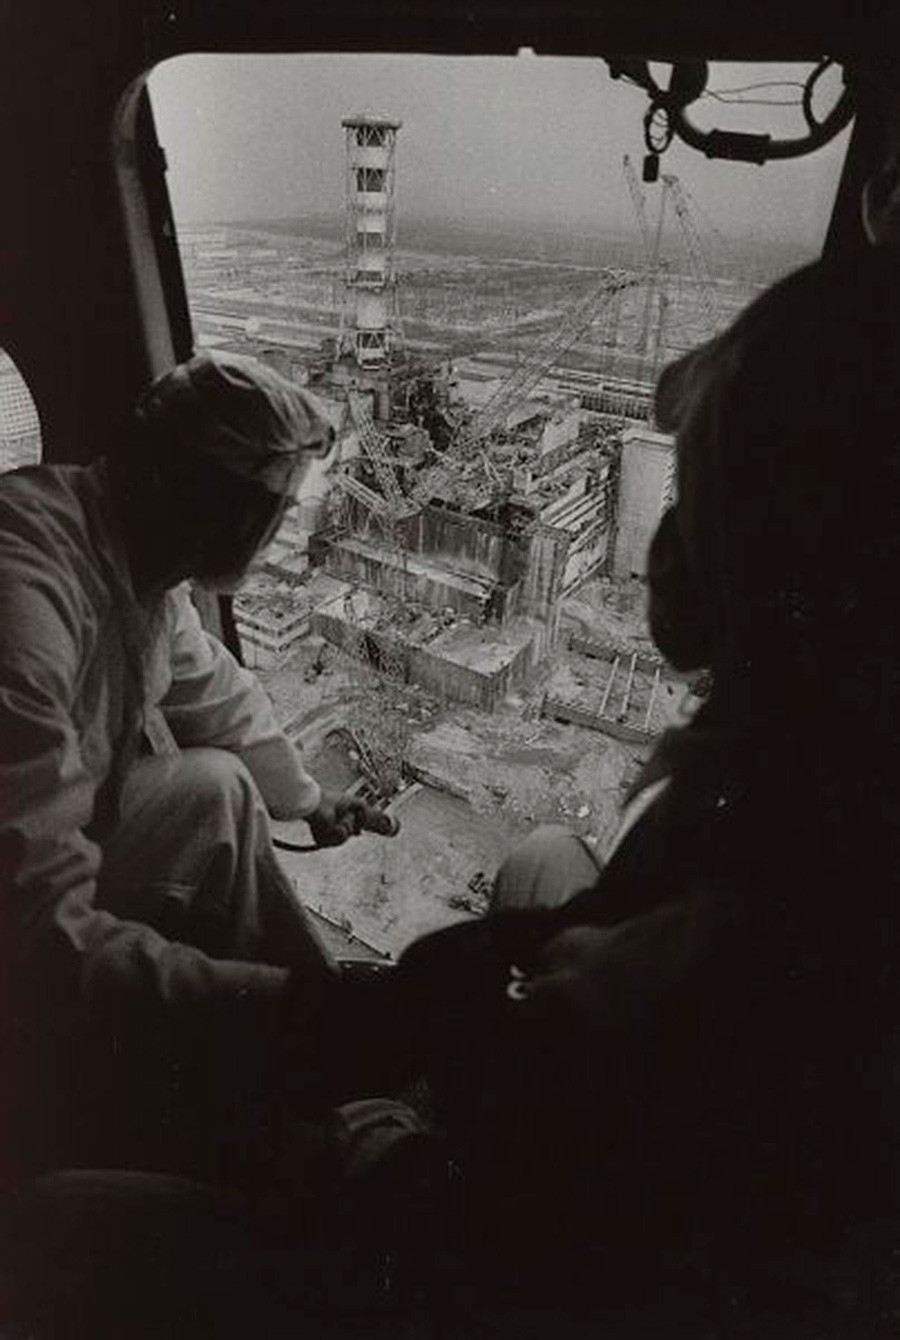 Černobil, merjenje sevanja iz helikopterja, 1986

